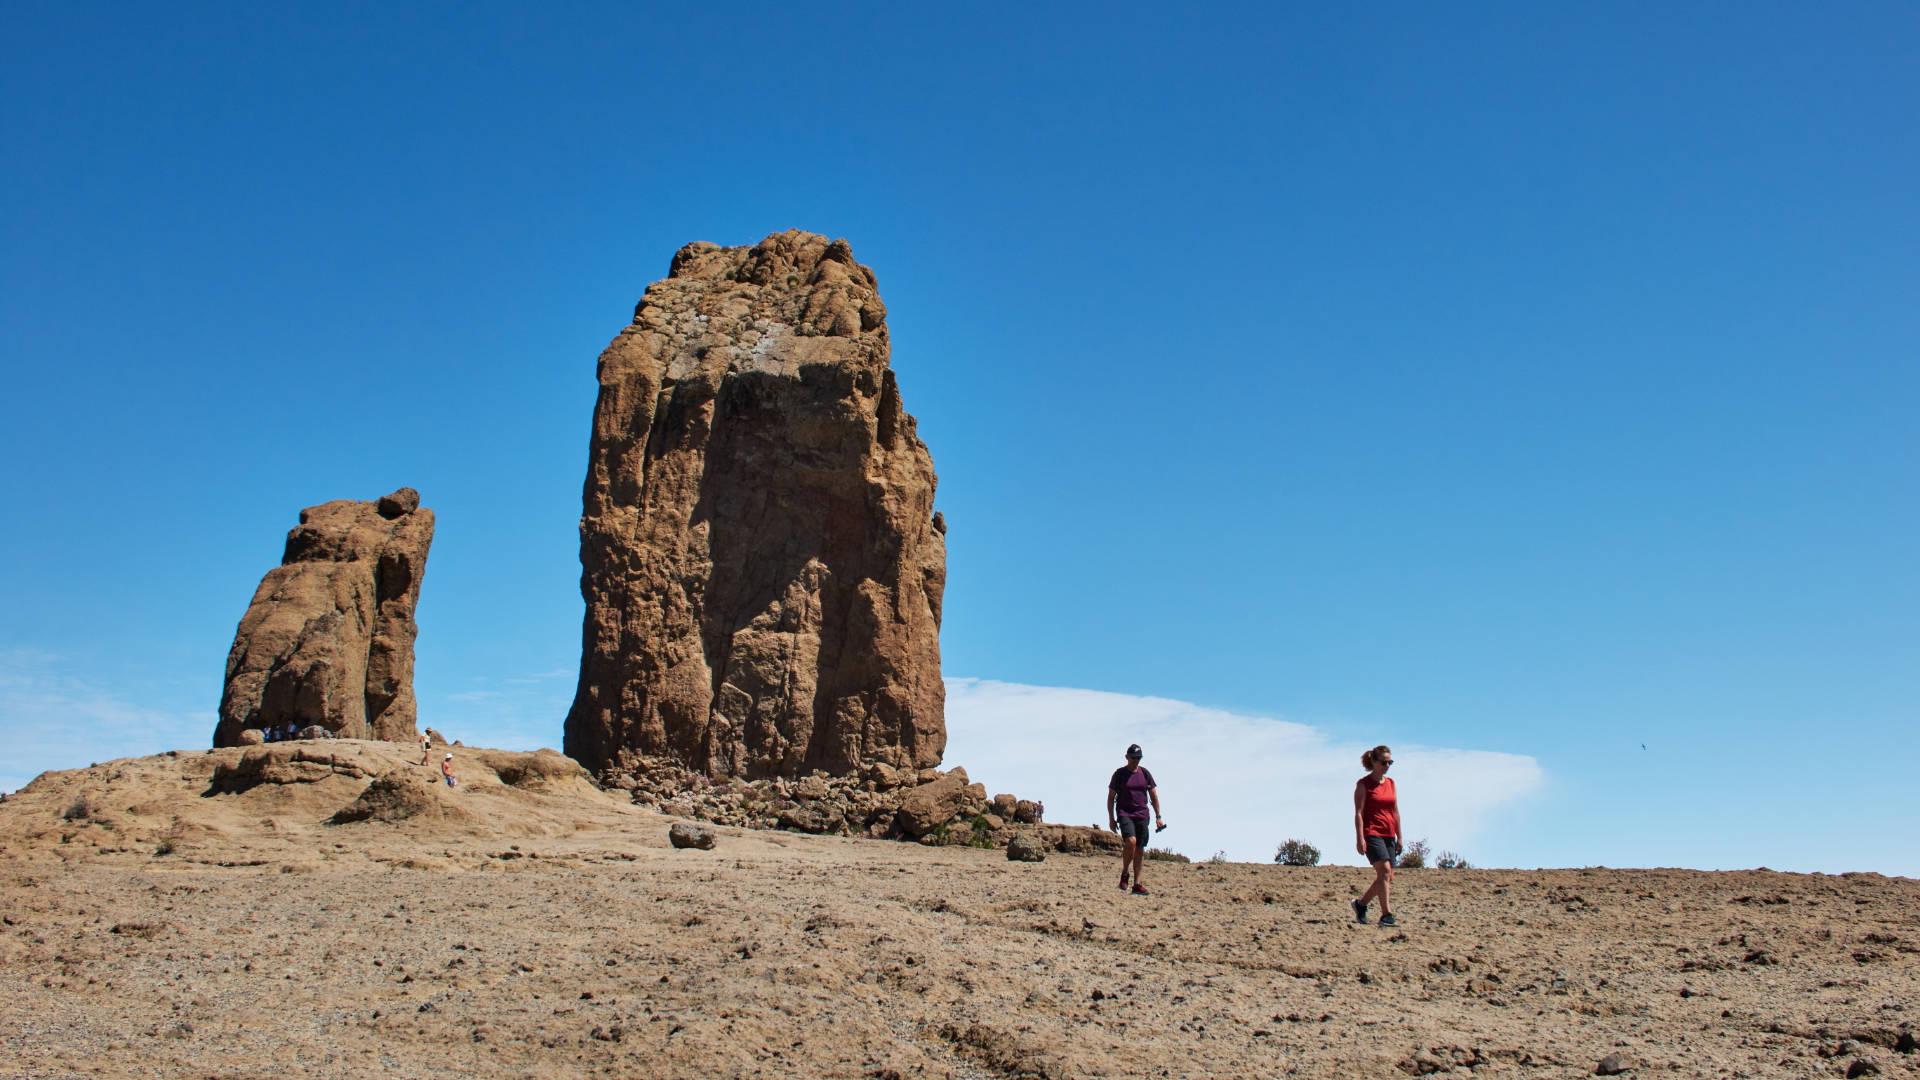 Das Hochplateau des Roque Nublo von beachtlicher Grösse.